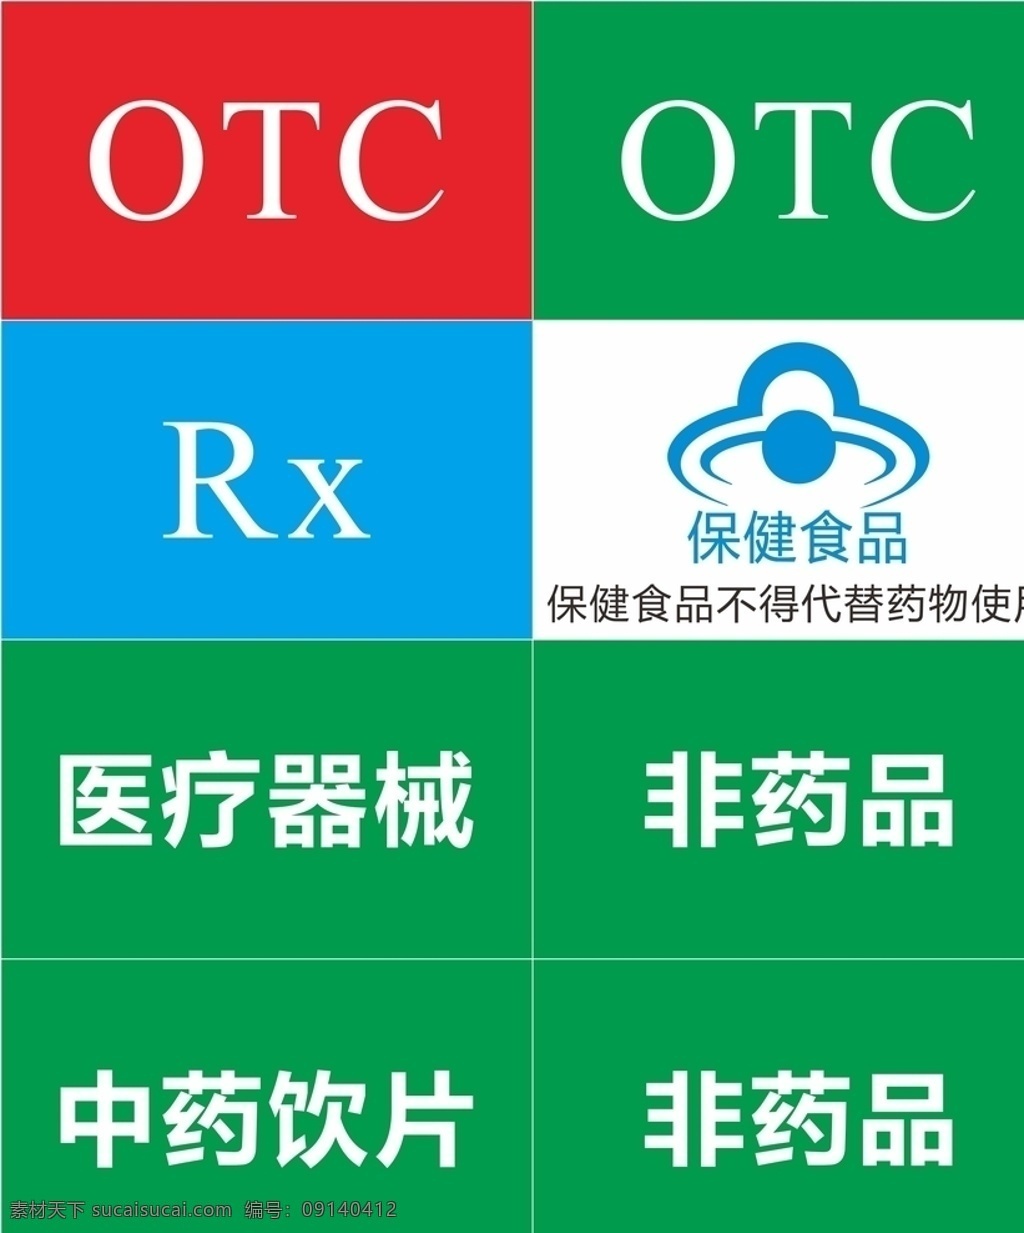 浙江省 药店 药房 标识 标准 otc rx 考核 处方药 非处方药 标志图标 公共标识标志